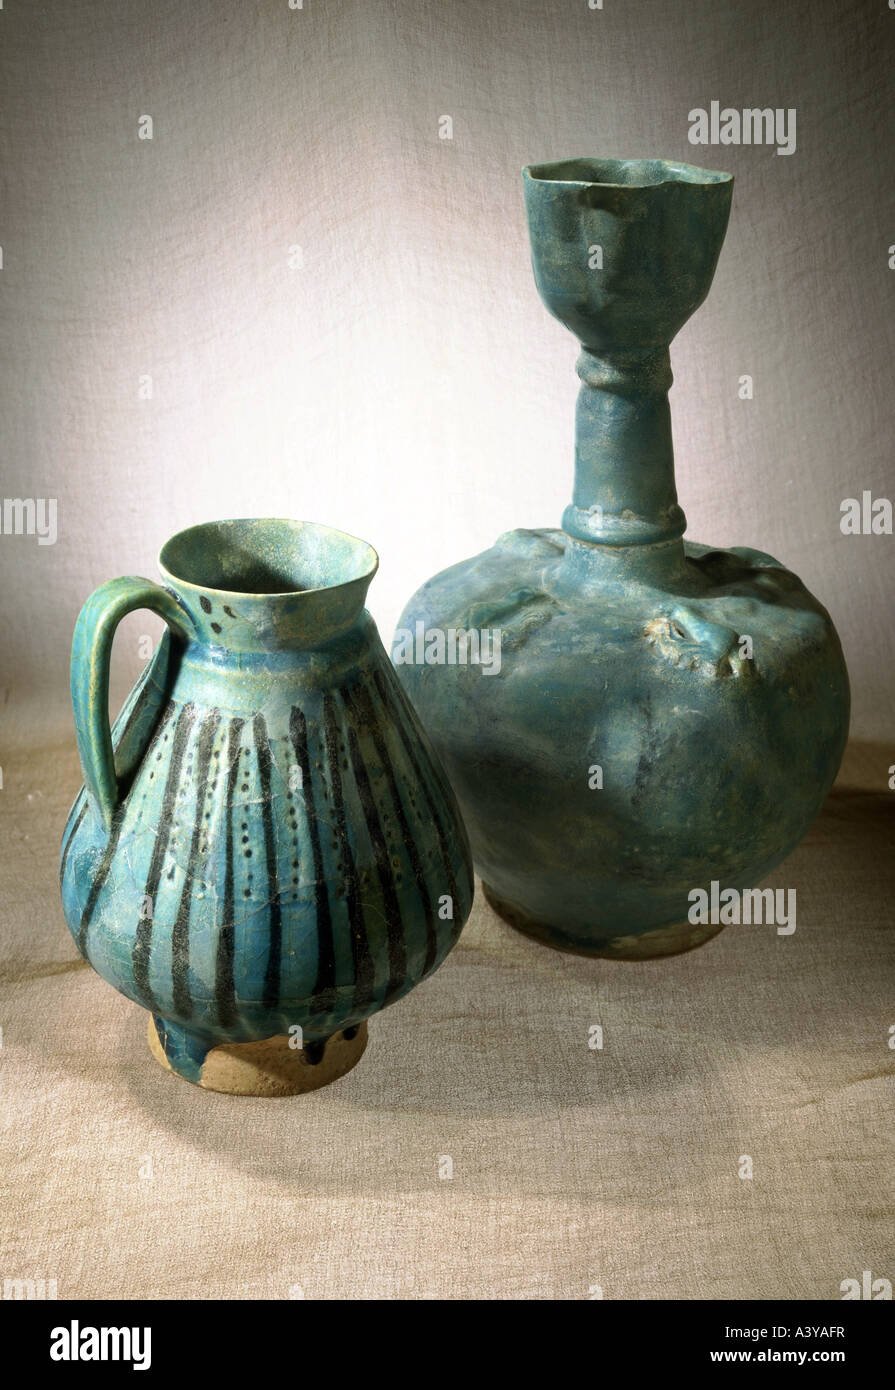 Beaux-arts, l'art islamique, de l'artisanat / artisanat, à gauche : mug, l'Iran, 13e siècle, a droite : bouteille, Nishapur, Iran, début du xiiie siècle, cer Banque D'Images